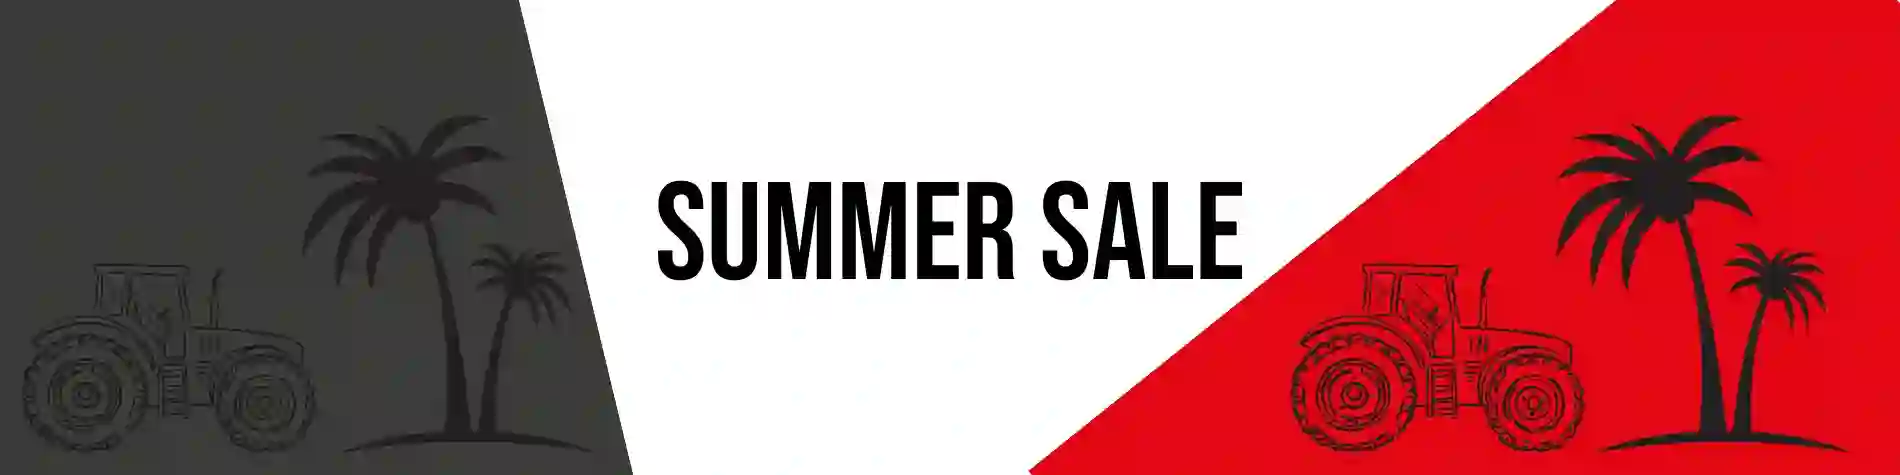 Landtechnik Summer Sale Banner